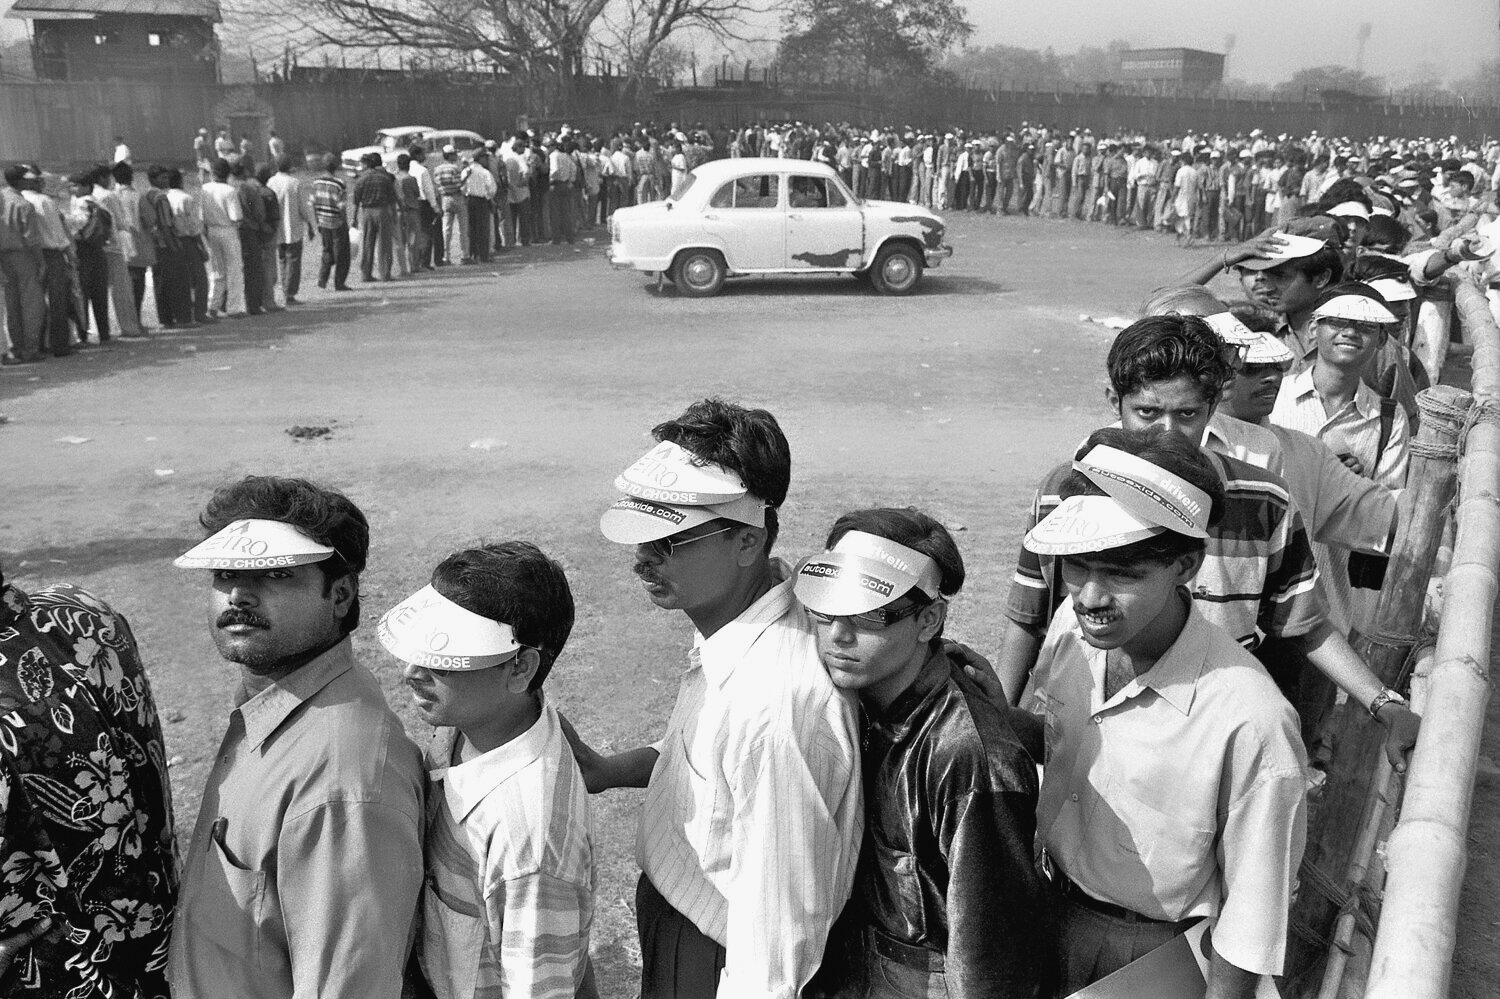 Ticket queue, Kolkata, March 2001